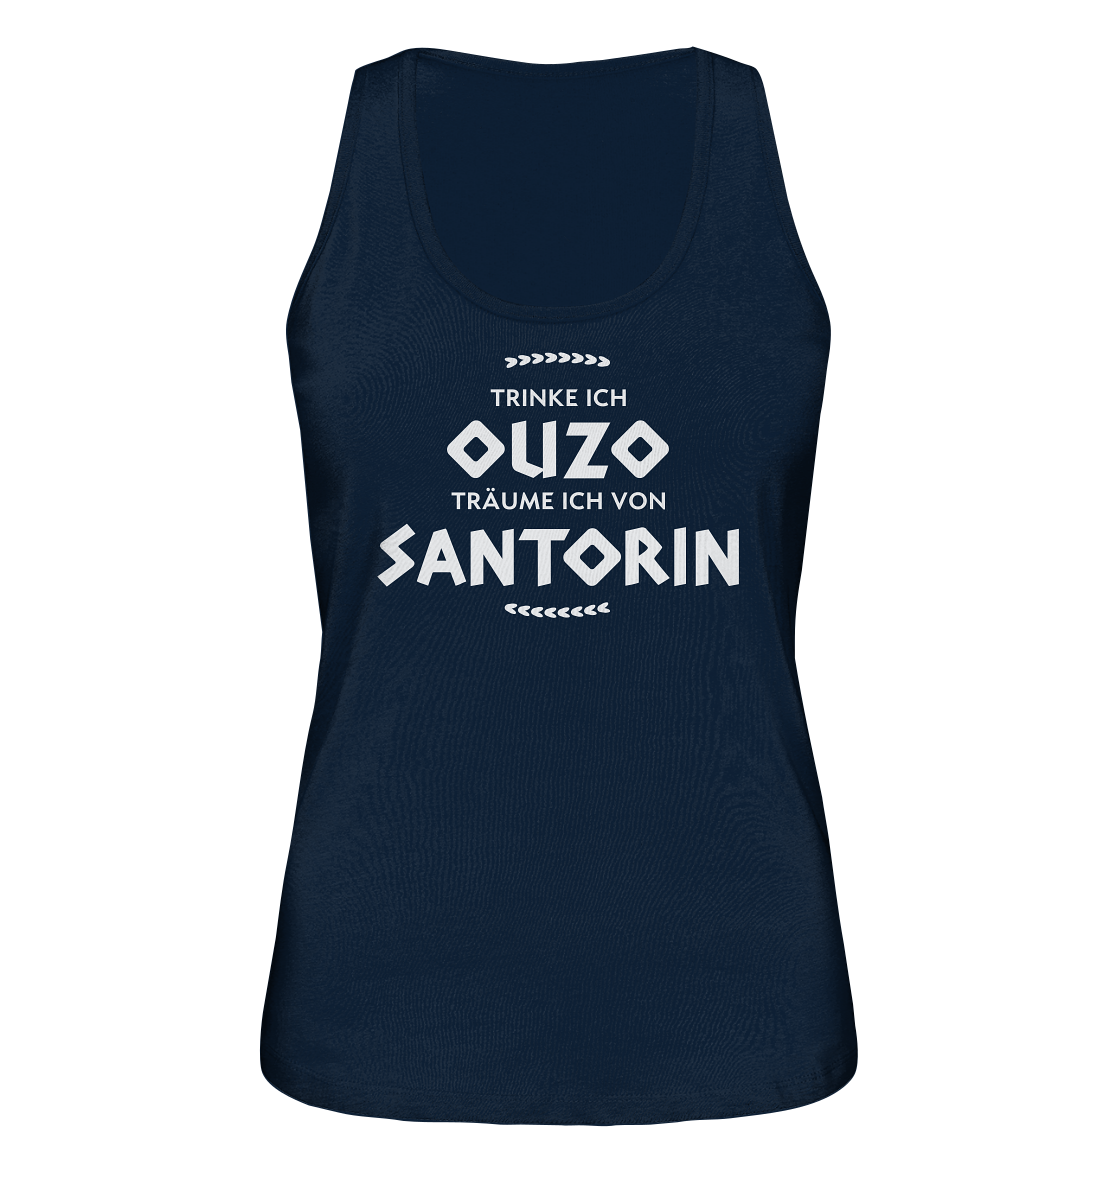 Trinke ich Ouzo träume ich von Santorin - Ladies Organic Tank-Top